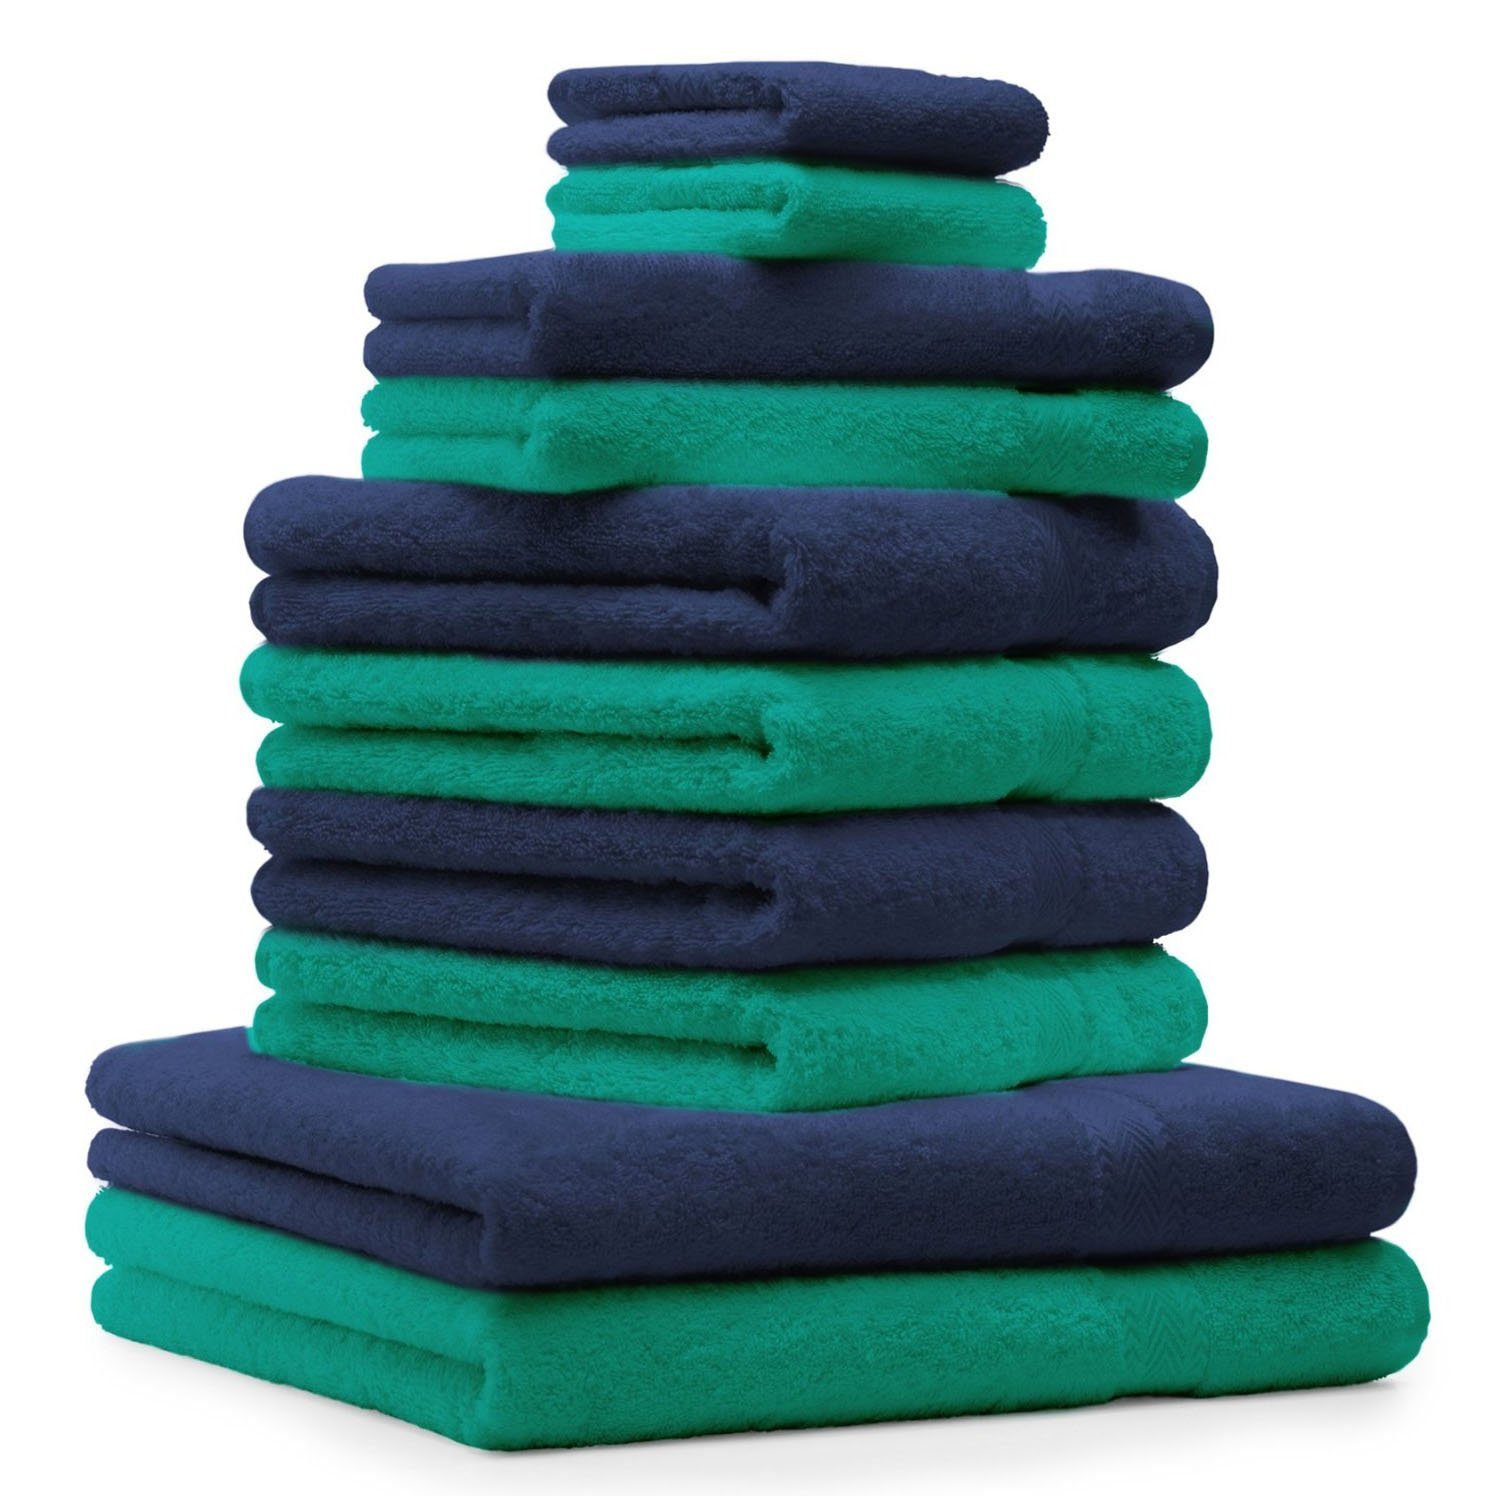 Betz Handtuch Set 10-TLG. Handtuch-Set Classic Farbe smaragdgrün und dunkelblau, 100% Baumwolle